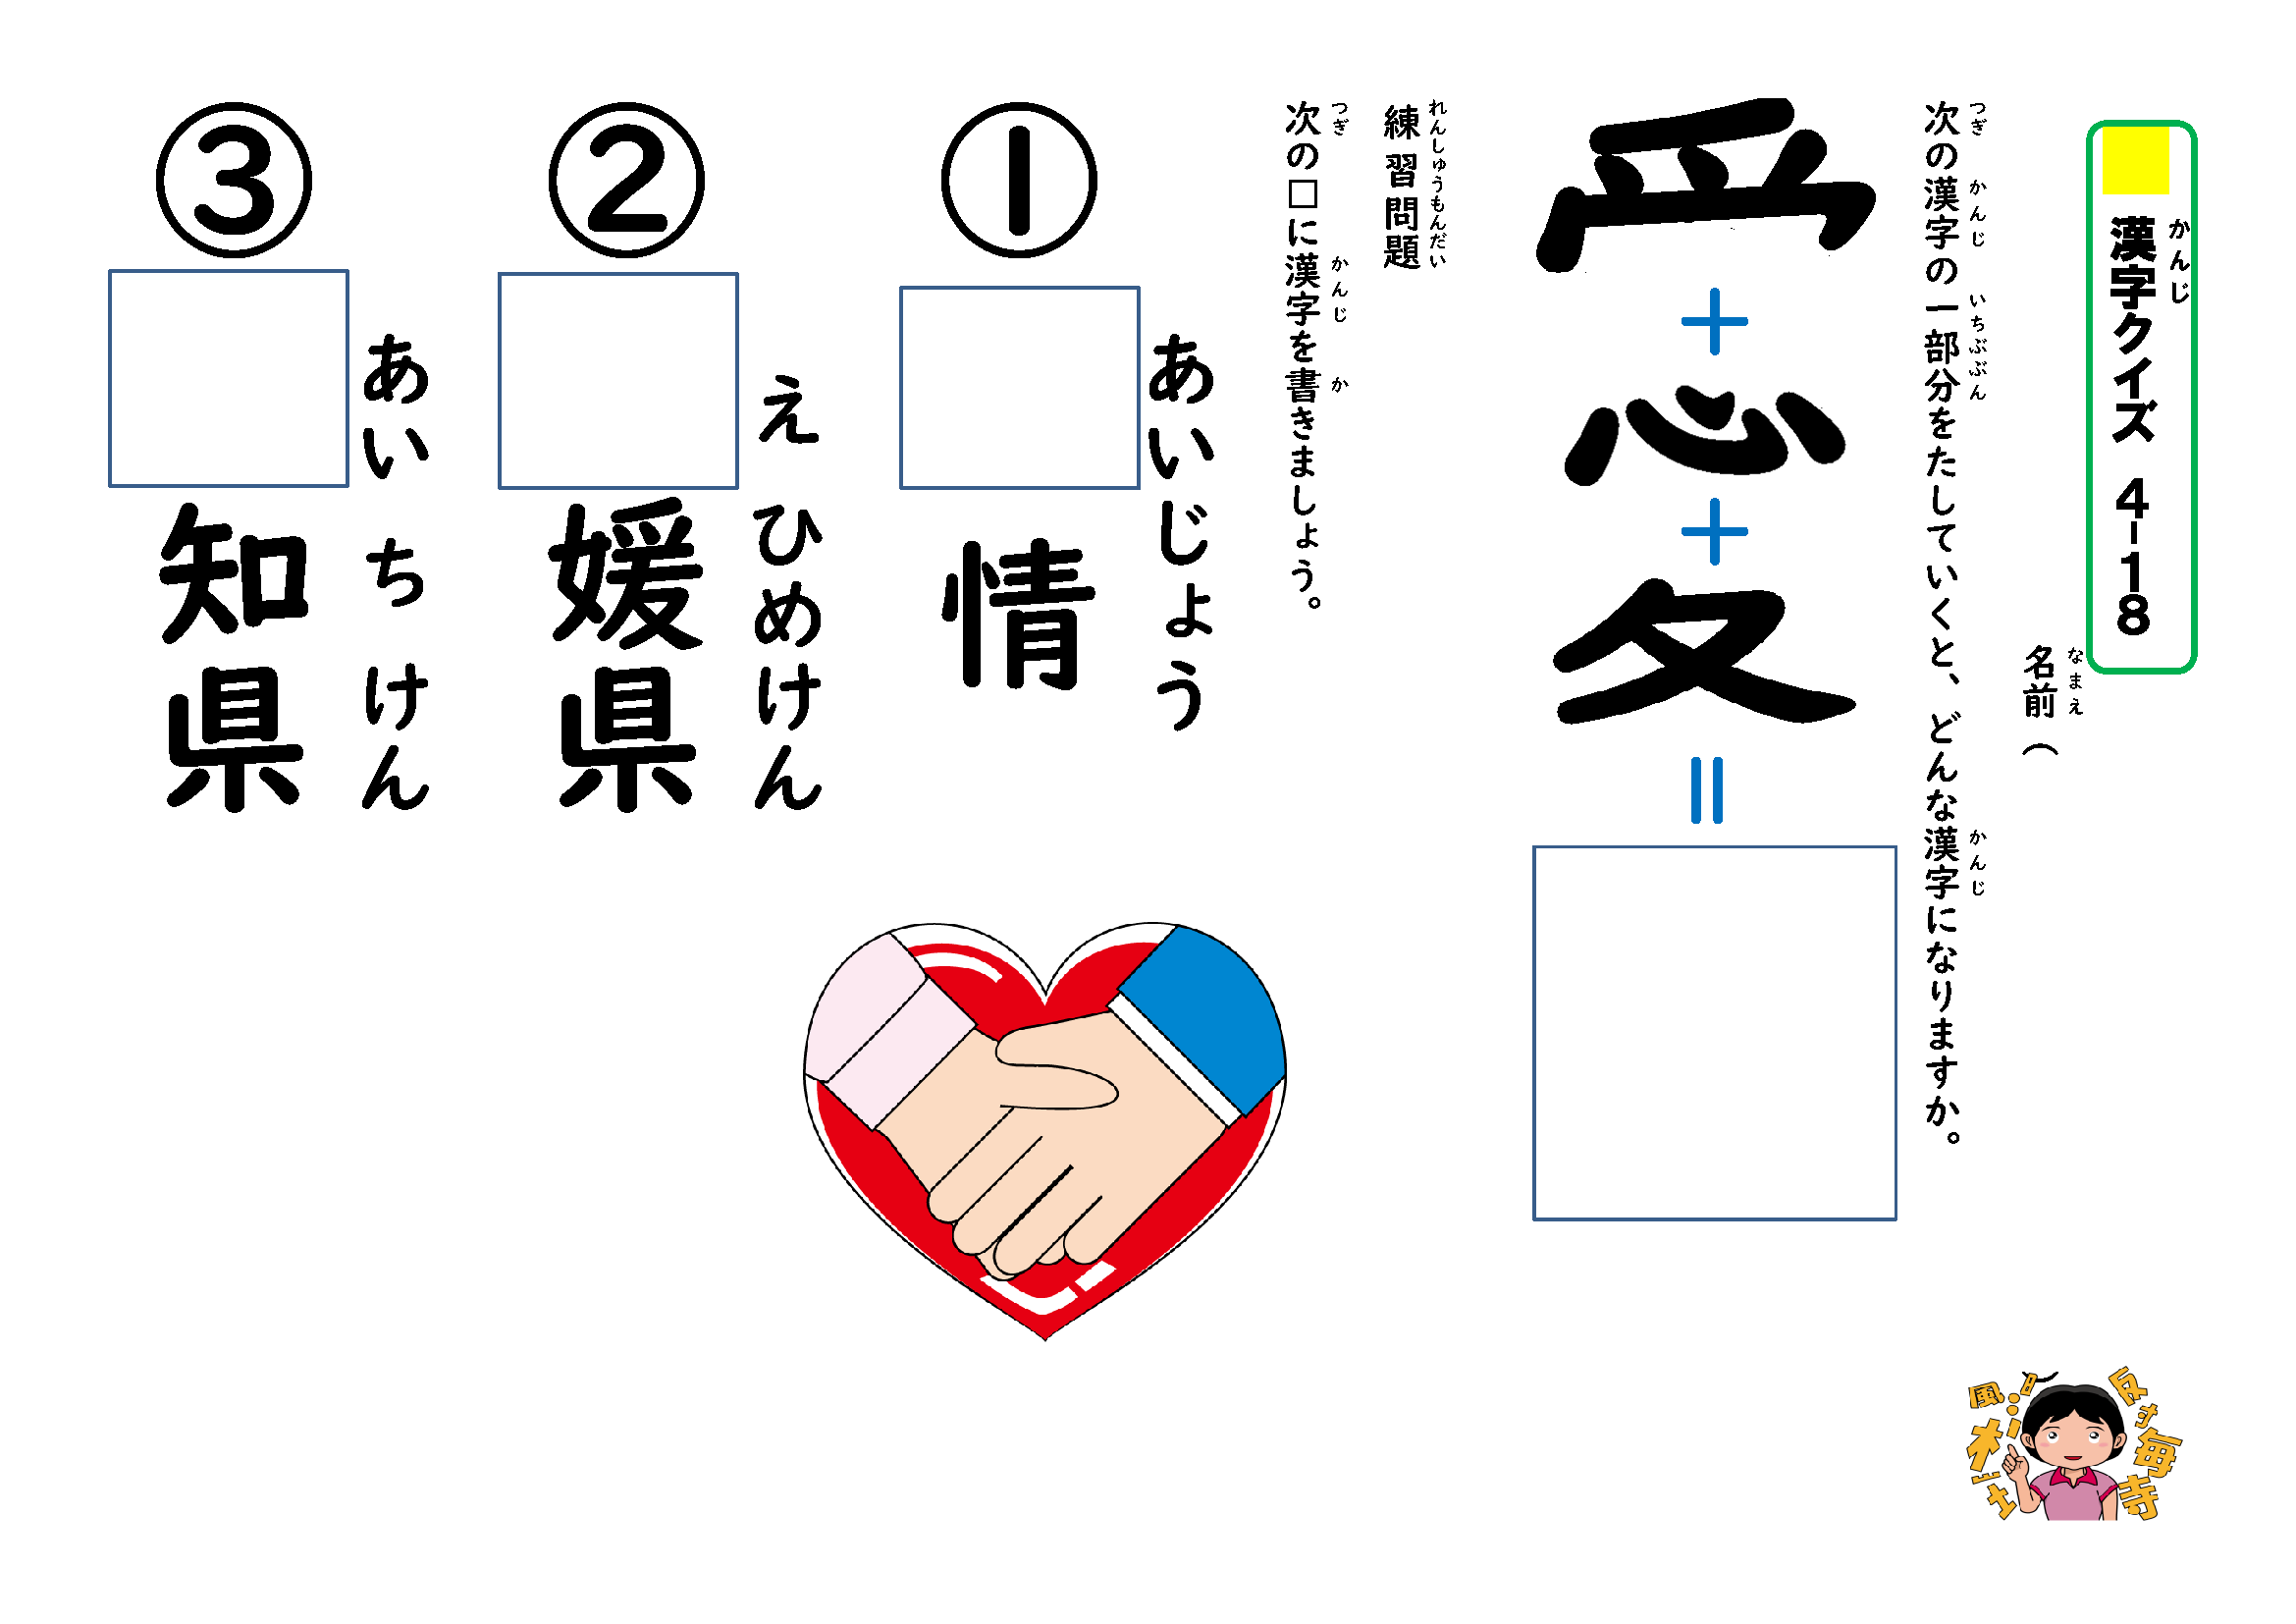 わくわく教材 分解して覚える漢字クイズ学習プリント 4年生用